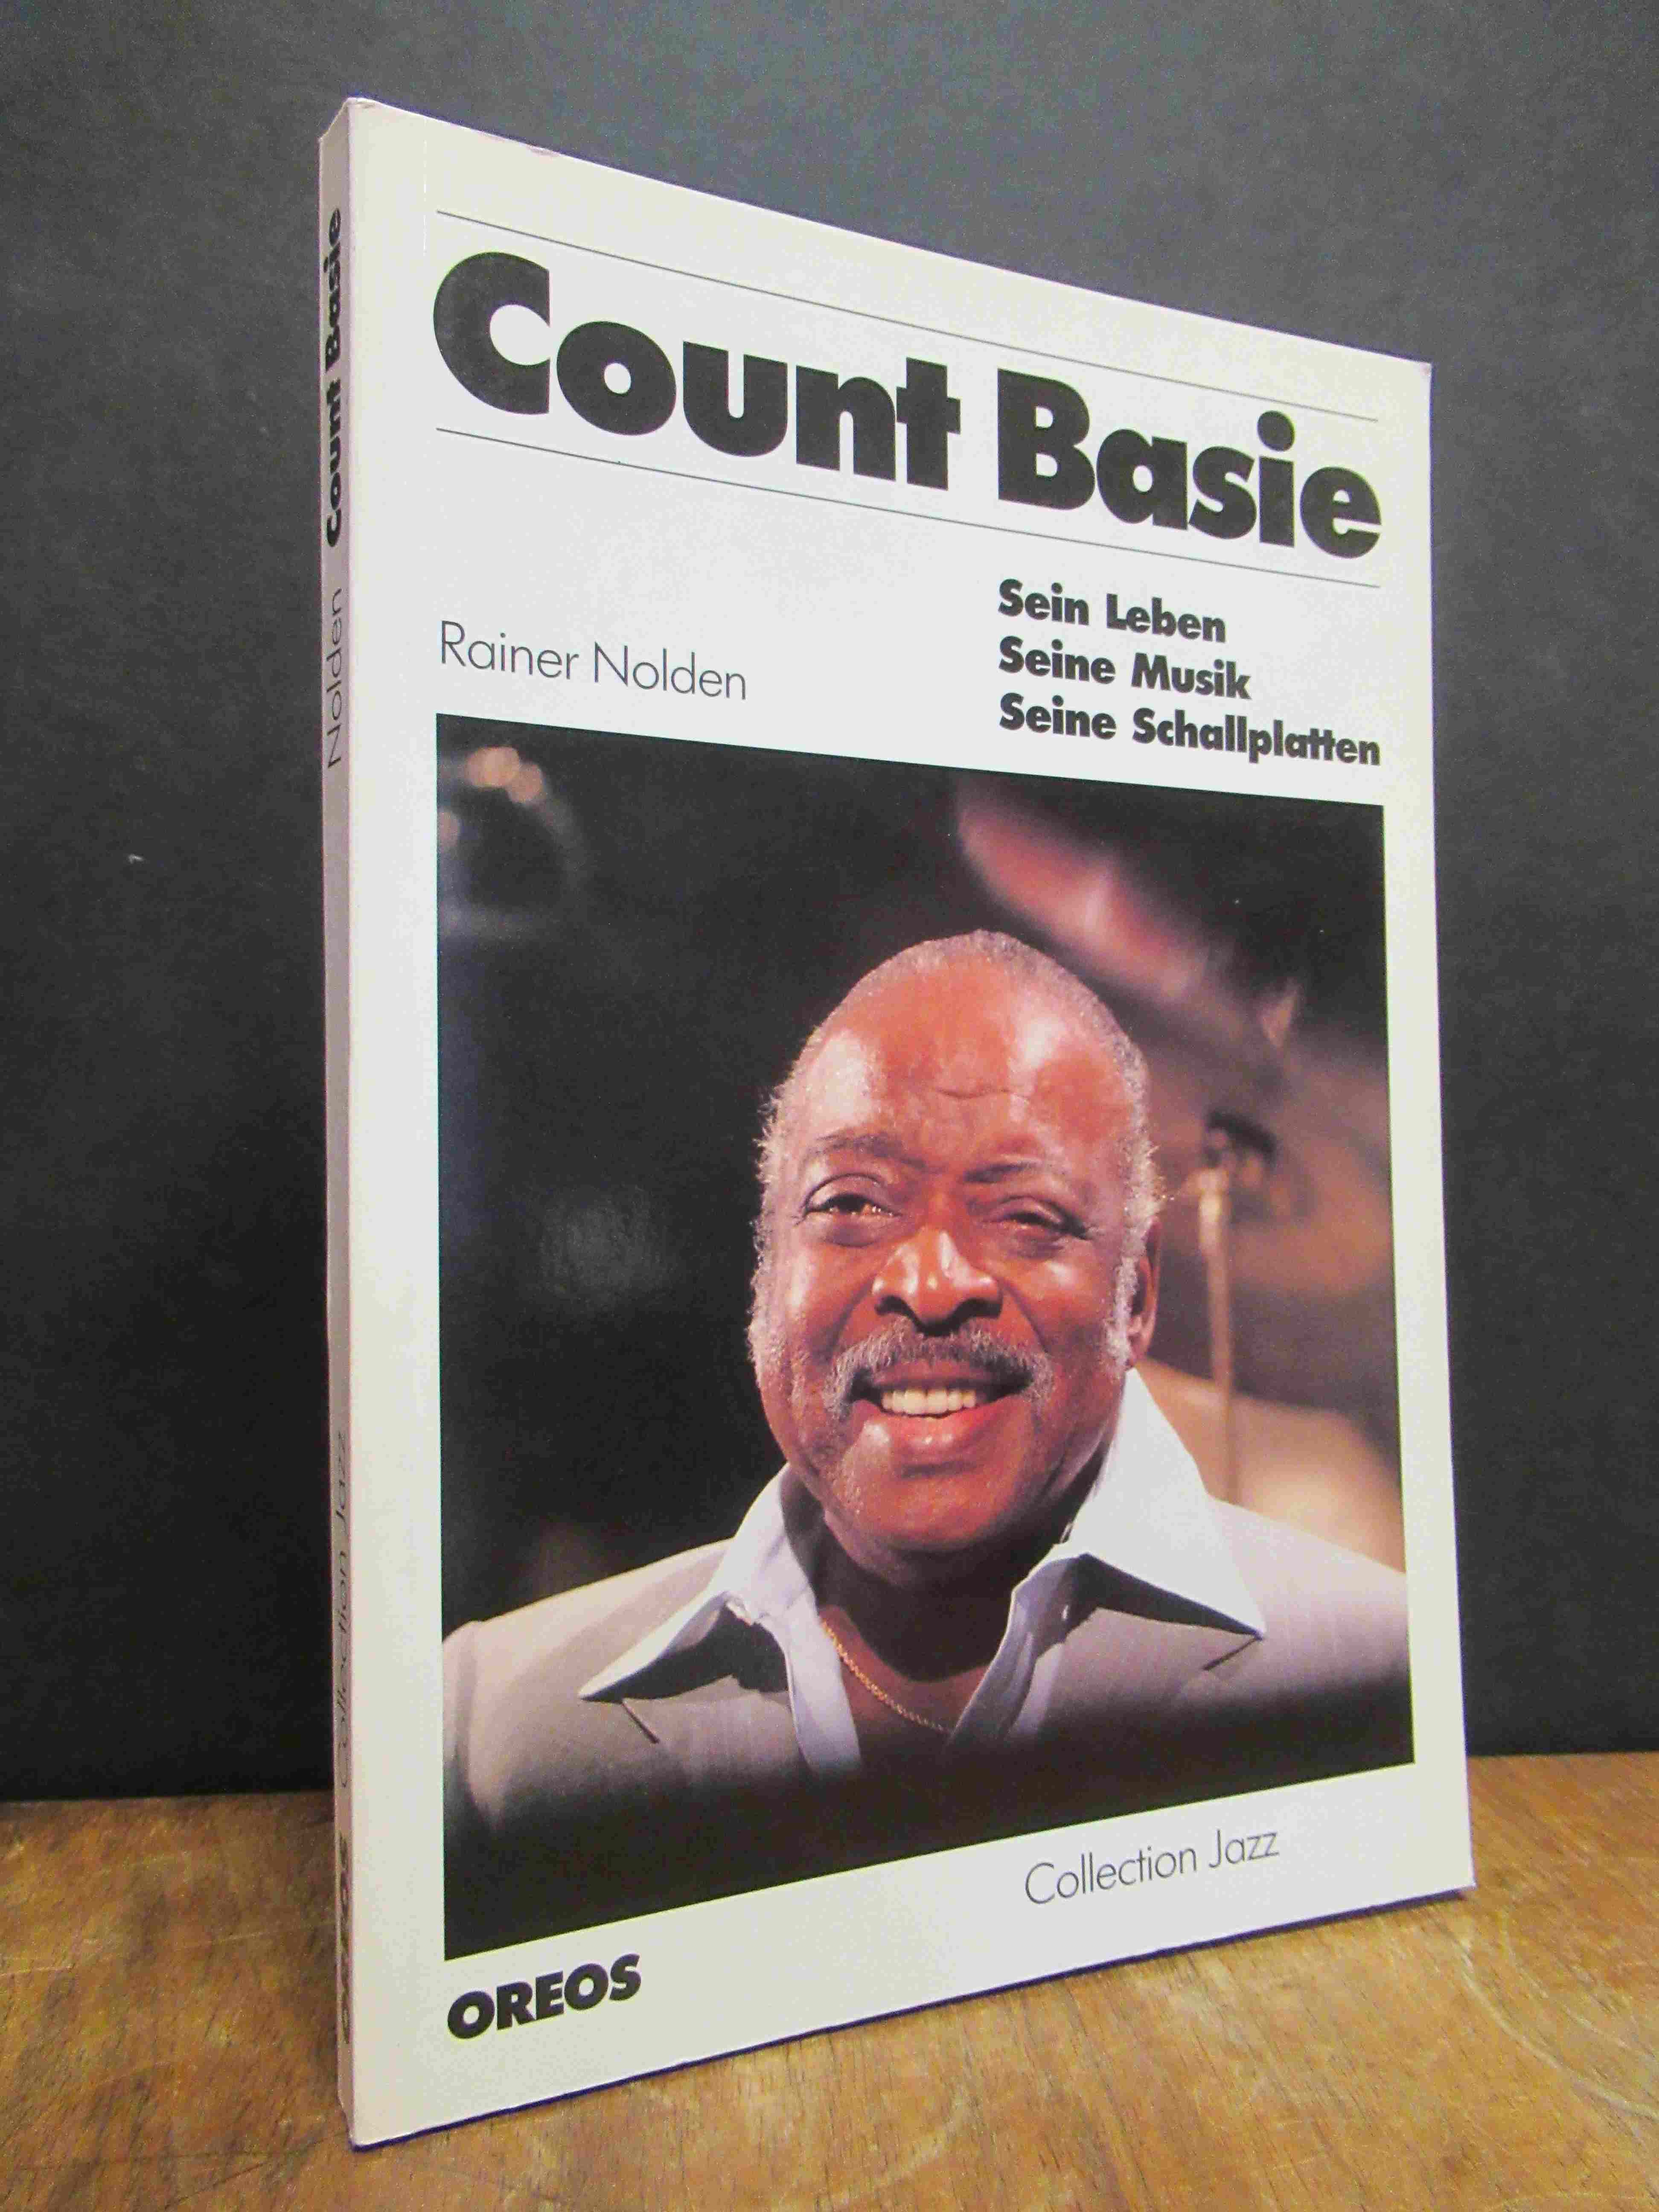 Basie, Count Basie – Sein Leben Seine Musik Seine Schallplatten,